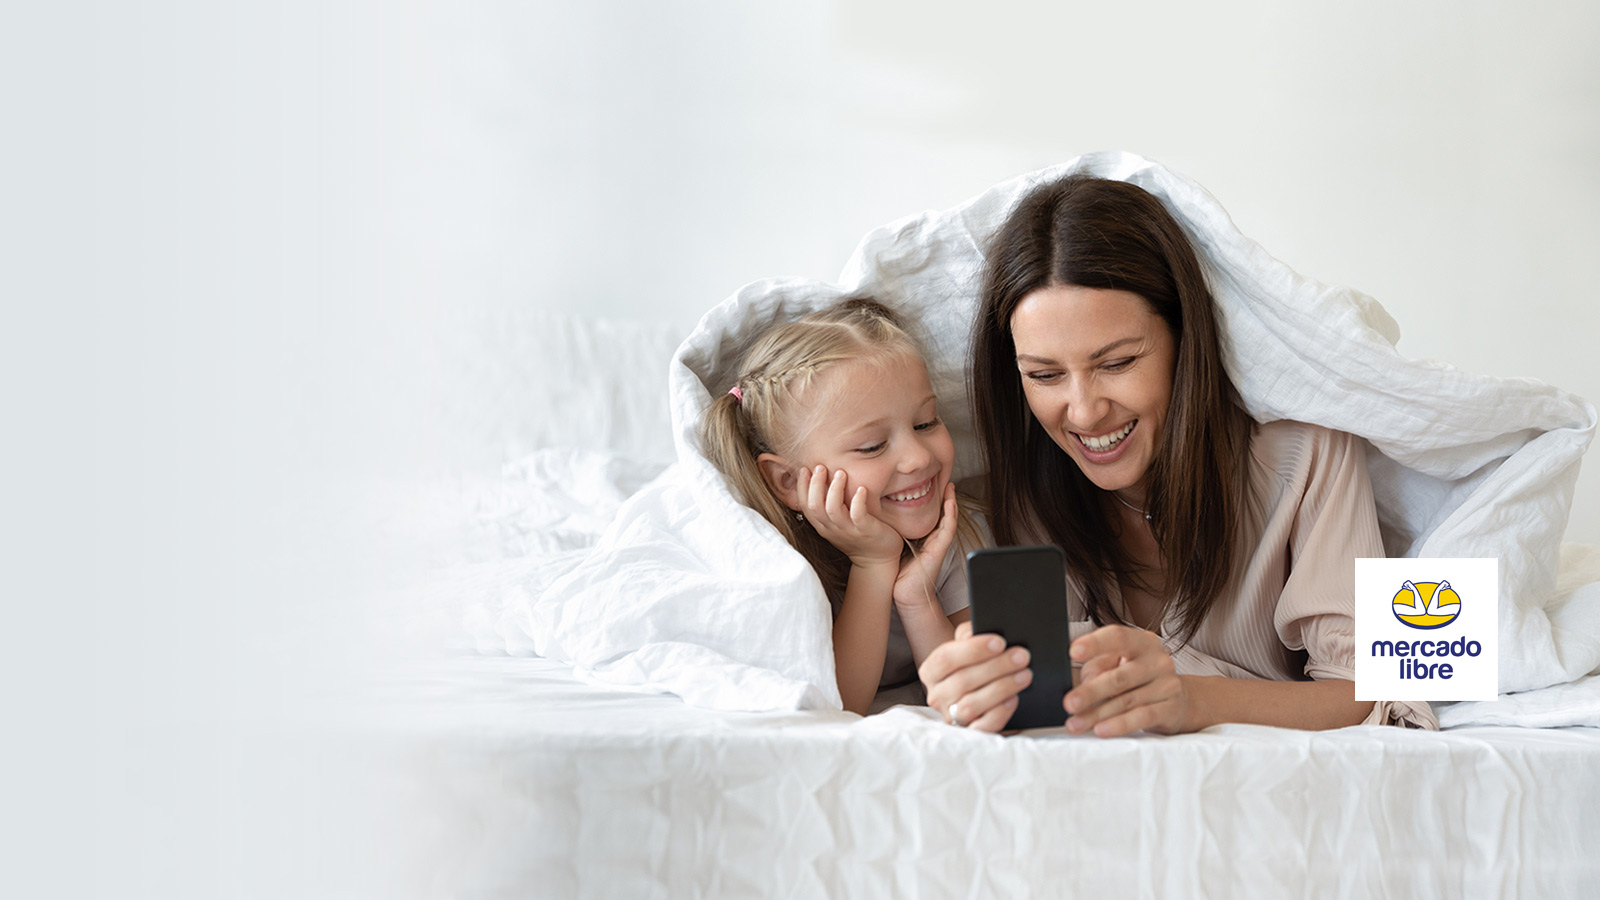 Madre e hija sonriendo mirando el teléfono móvil